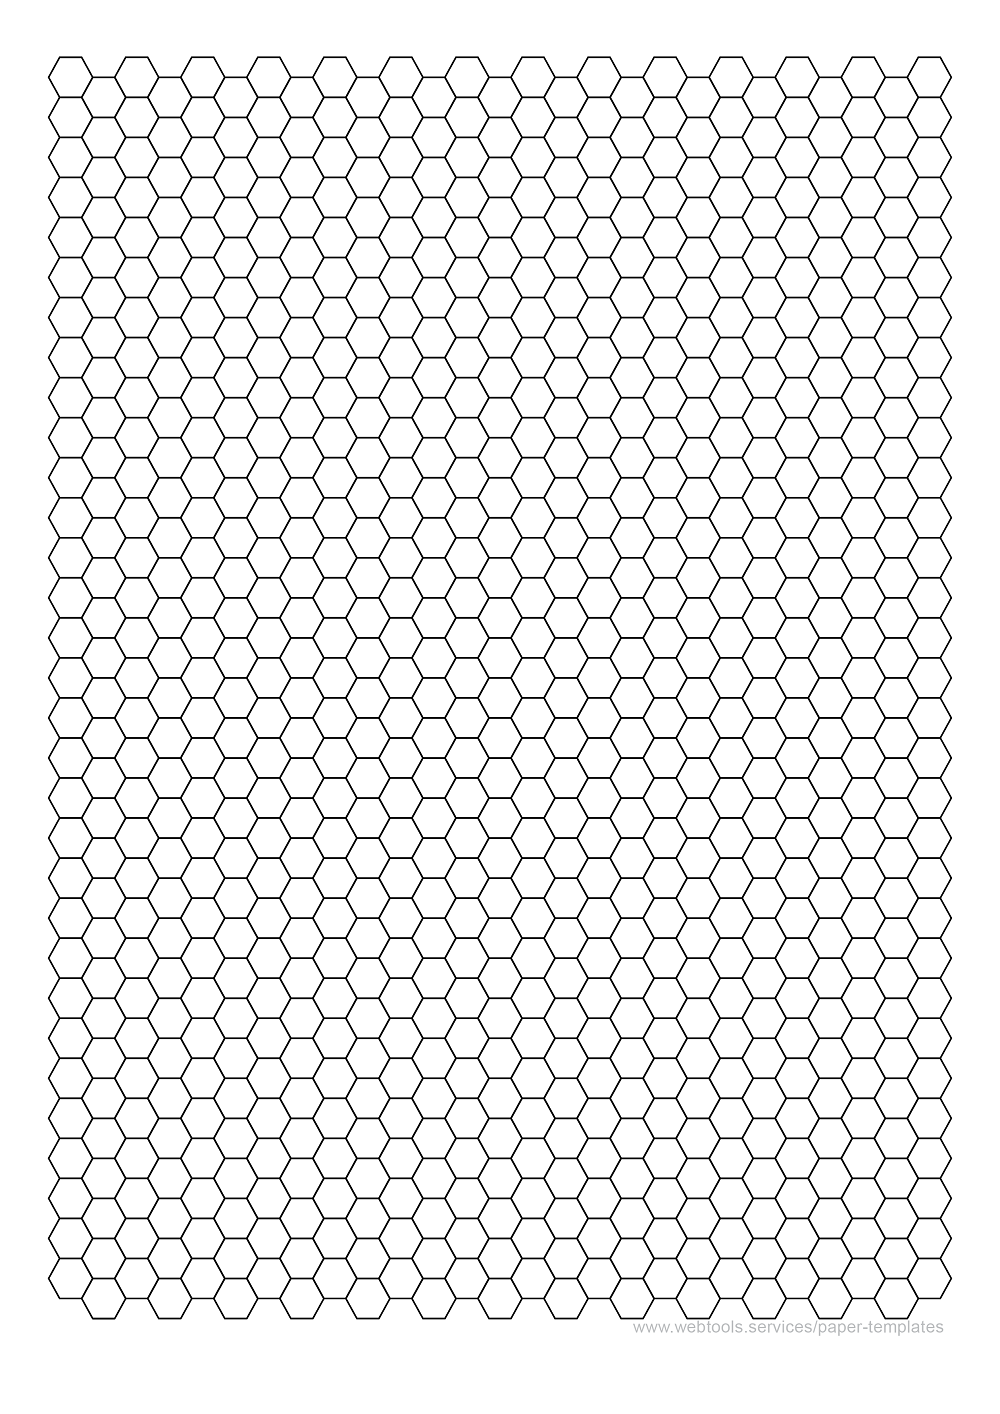 1/3 Inch Hexagonal Grid Paper